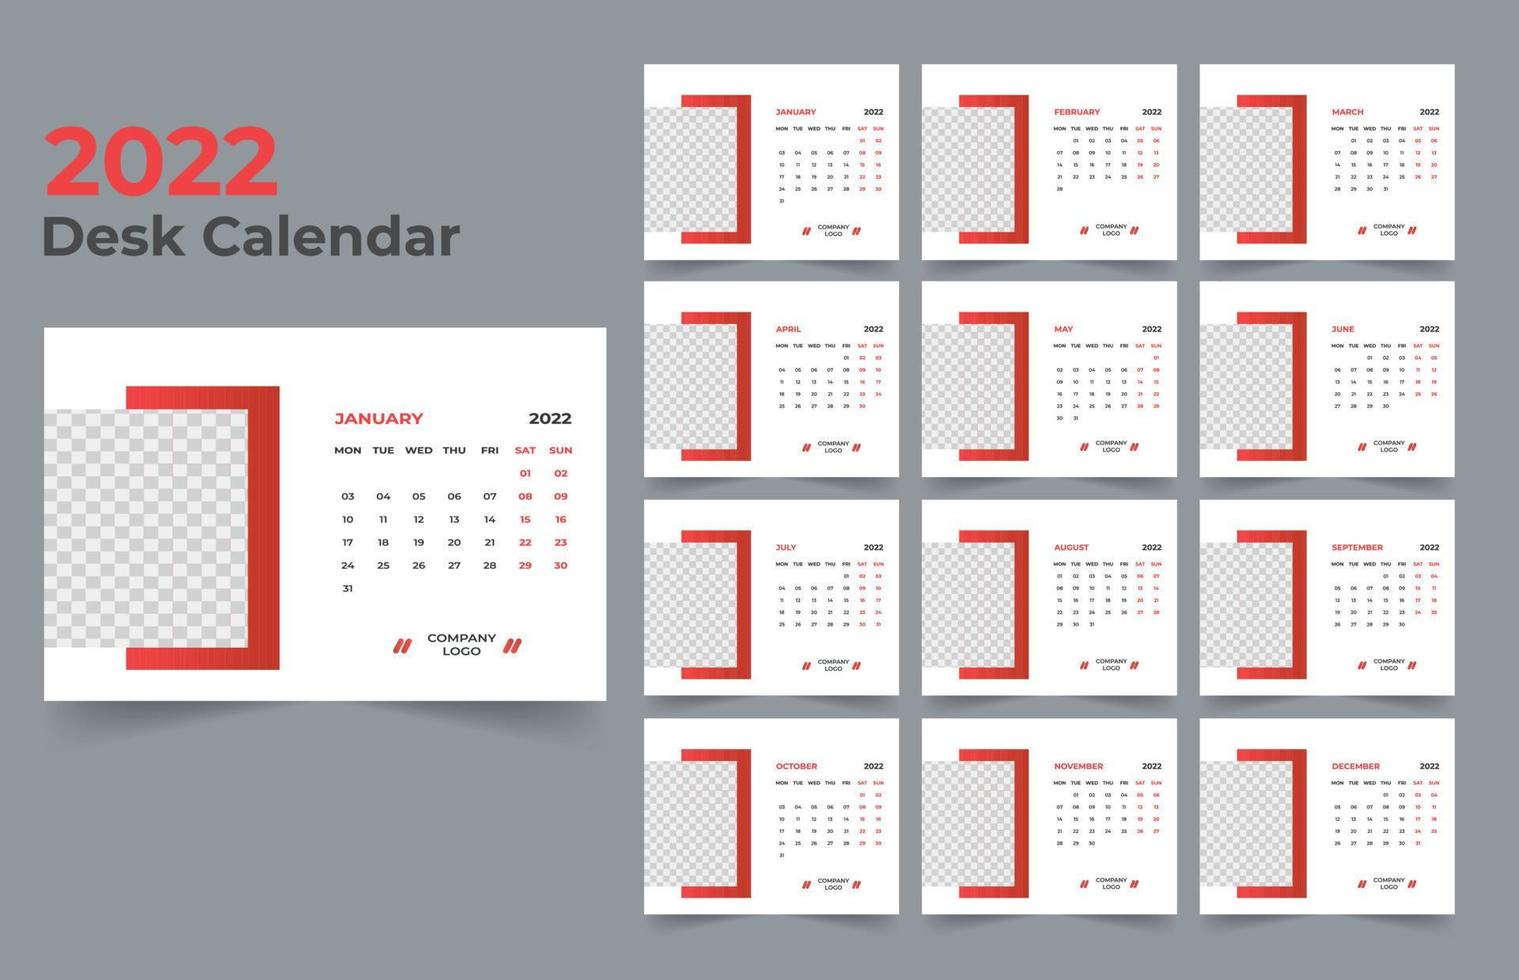 Desk Calendar Design 2022 vector